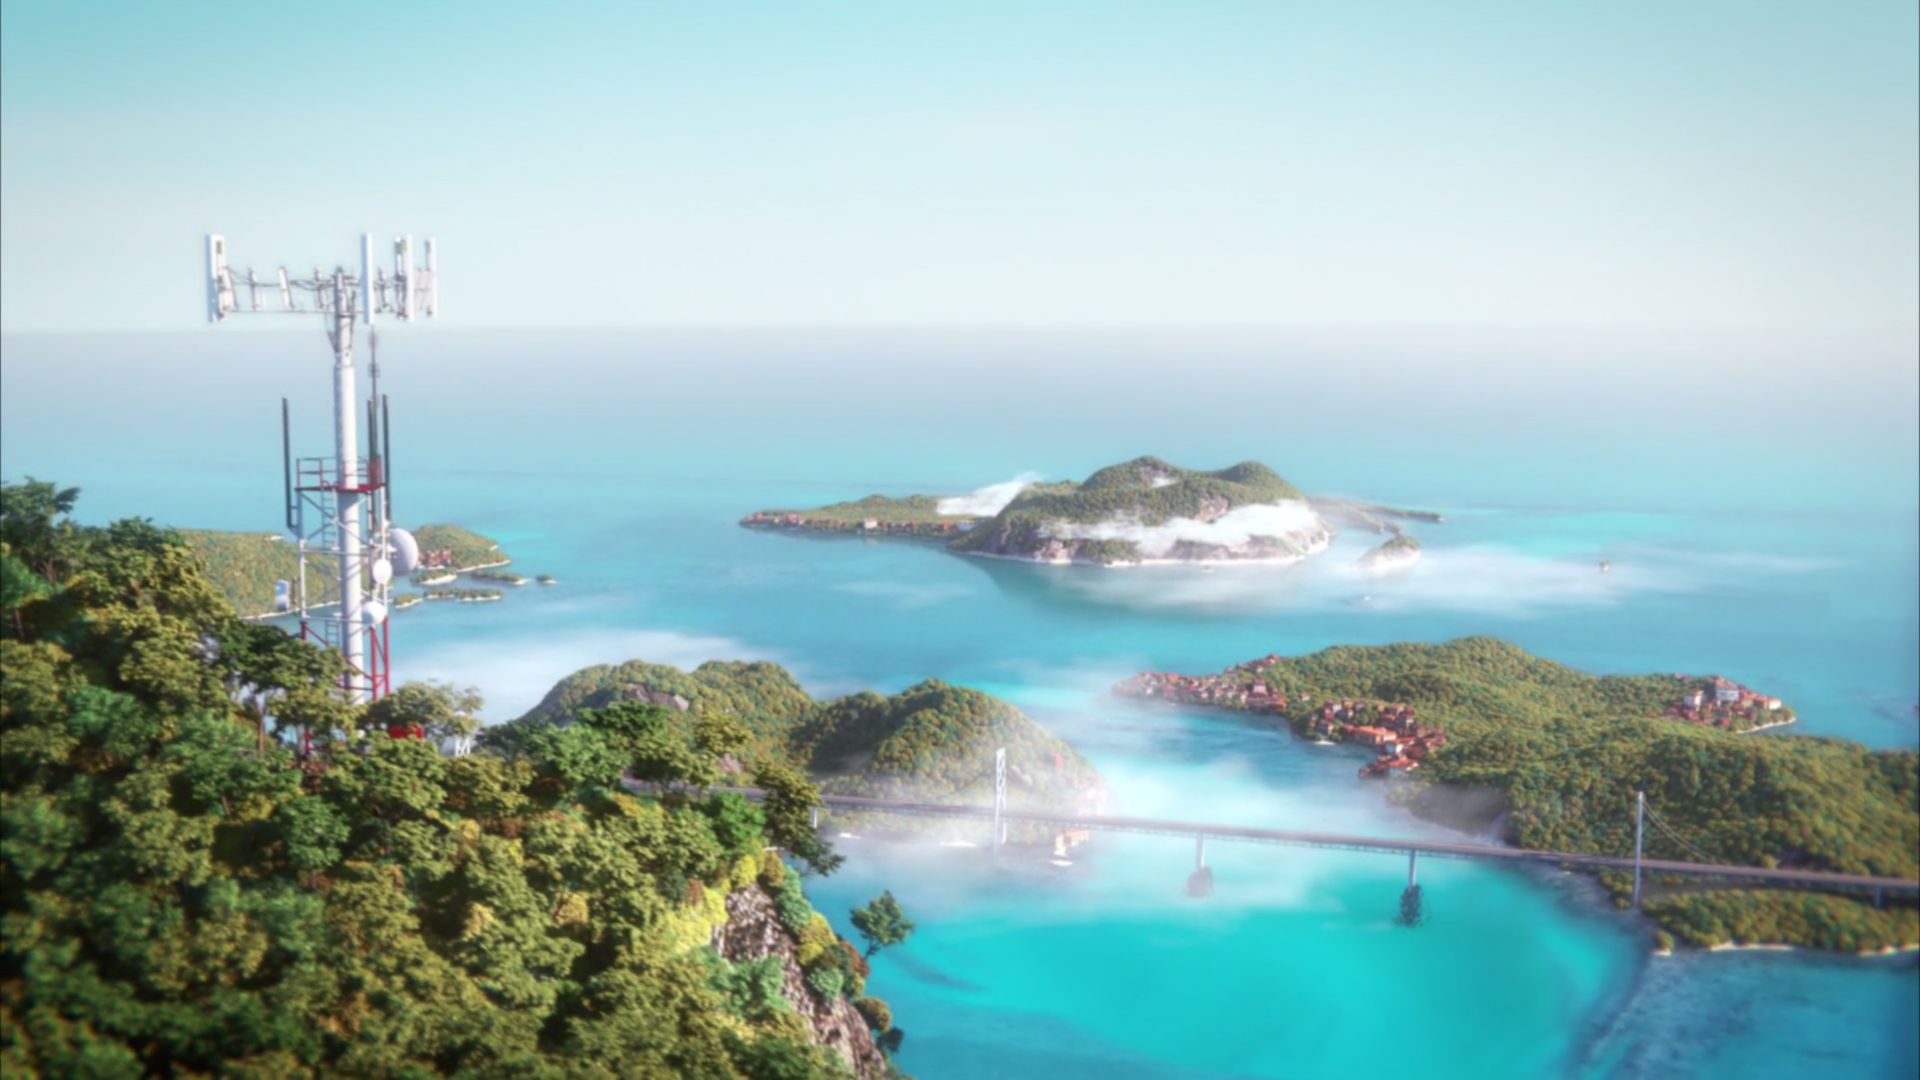 سی دی کی اریجینال استیم بازی Tropico 6